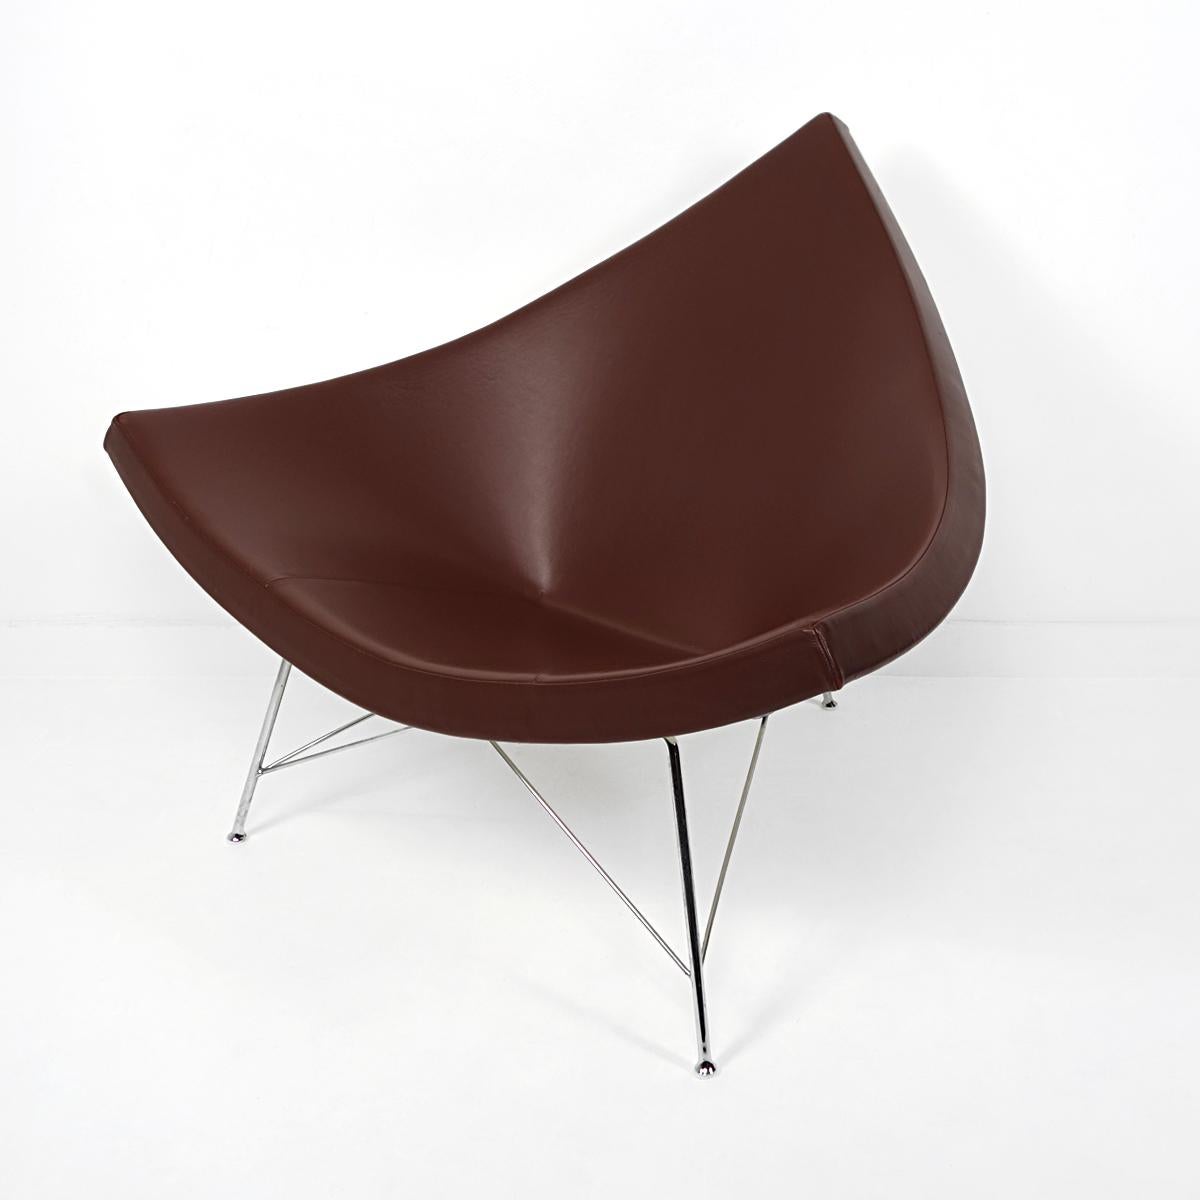 La chaise Coconut a été conçue en 1955 par l'architecte, designer industriel, auteur, éditeur et enseignant américain George Nelson. Il s'est manifestement inspiré d'une noix de coco découpée en morceaux.

Cette chaise a été produite vers 2000 par